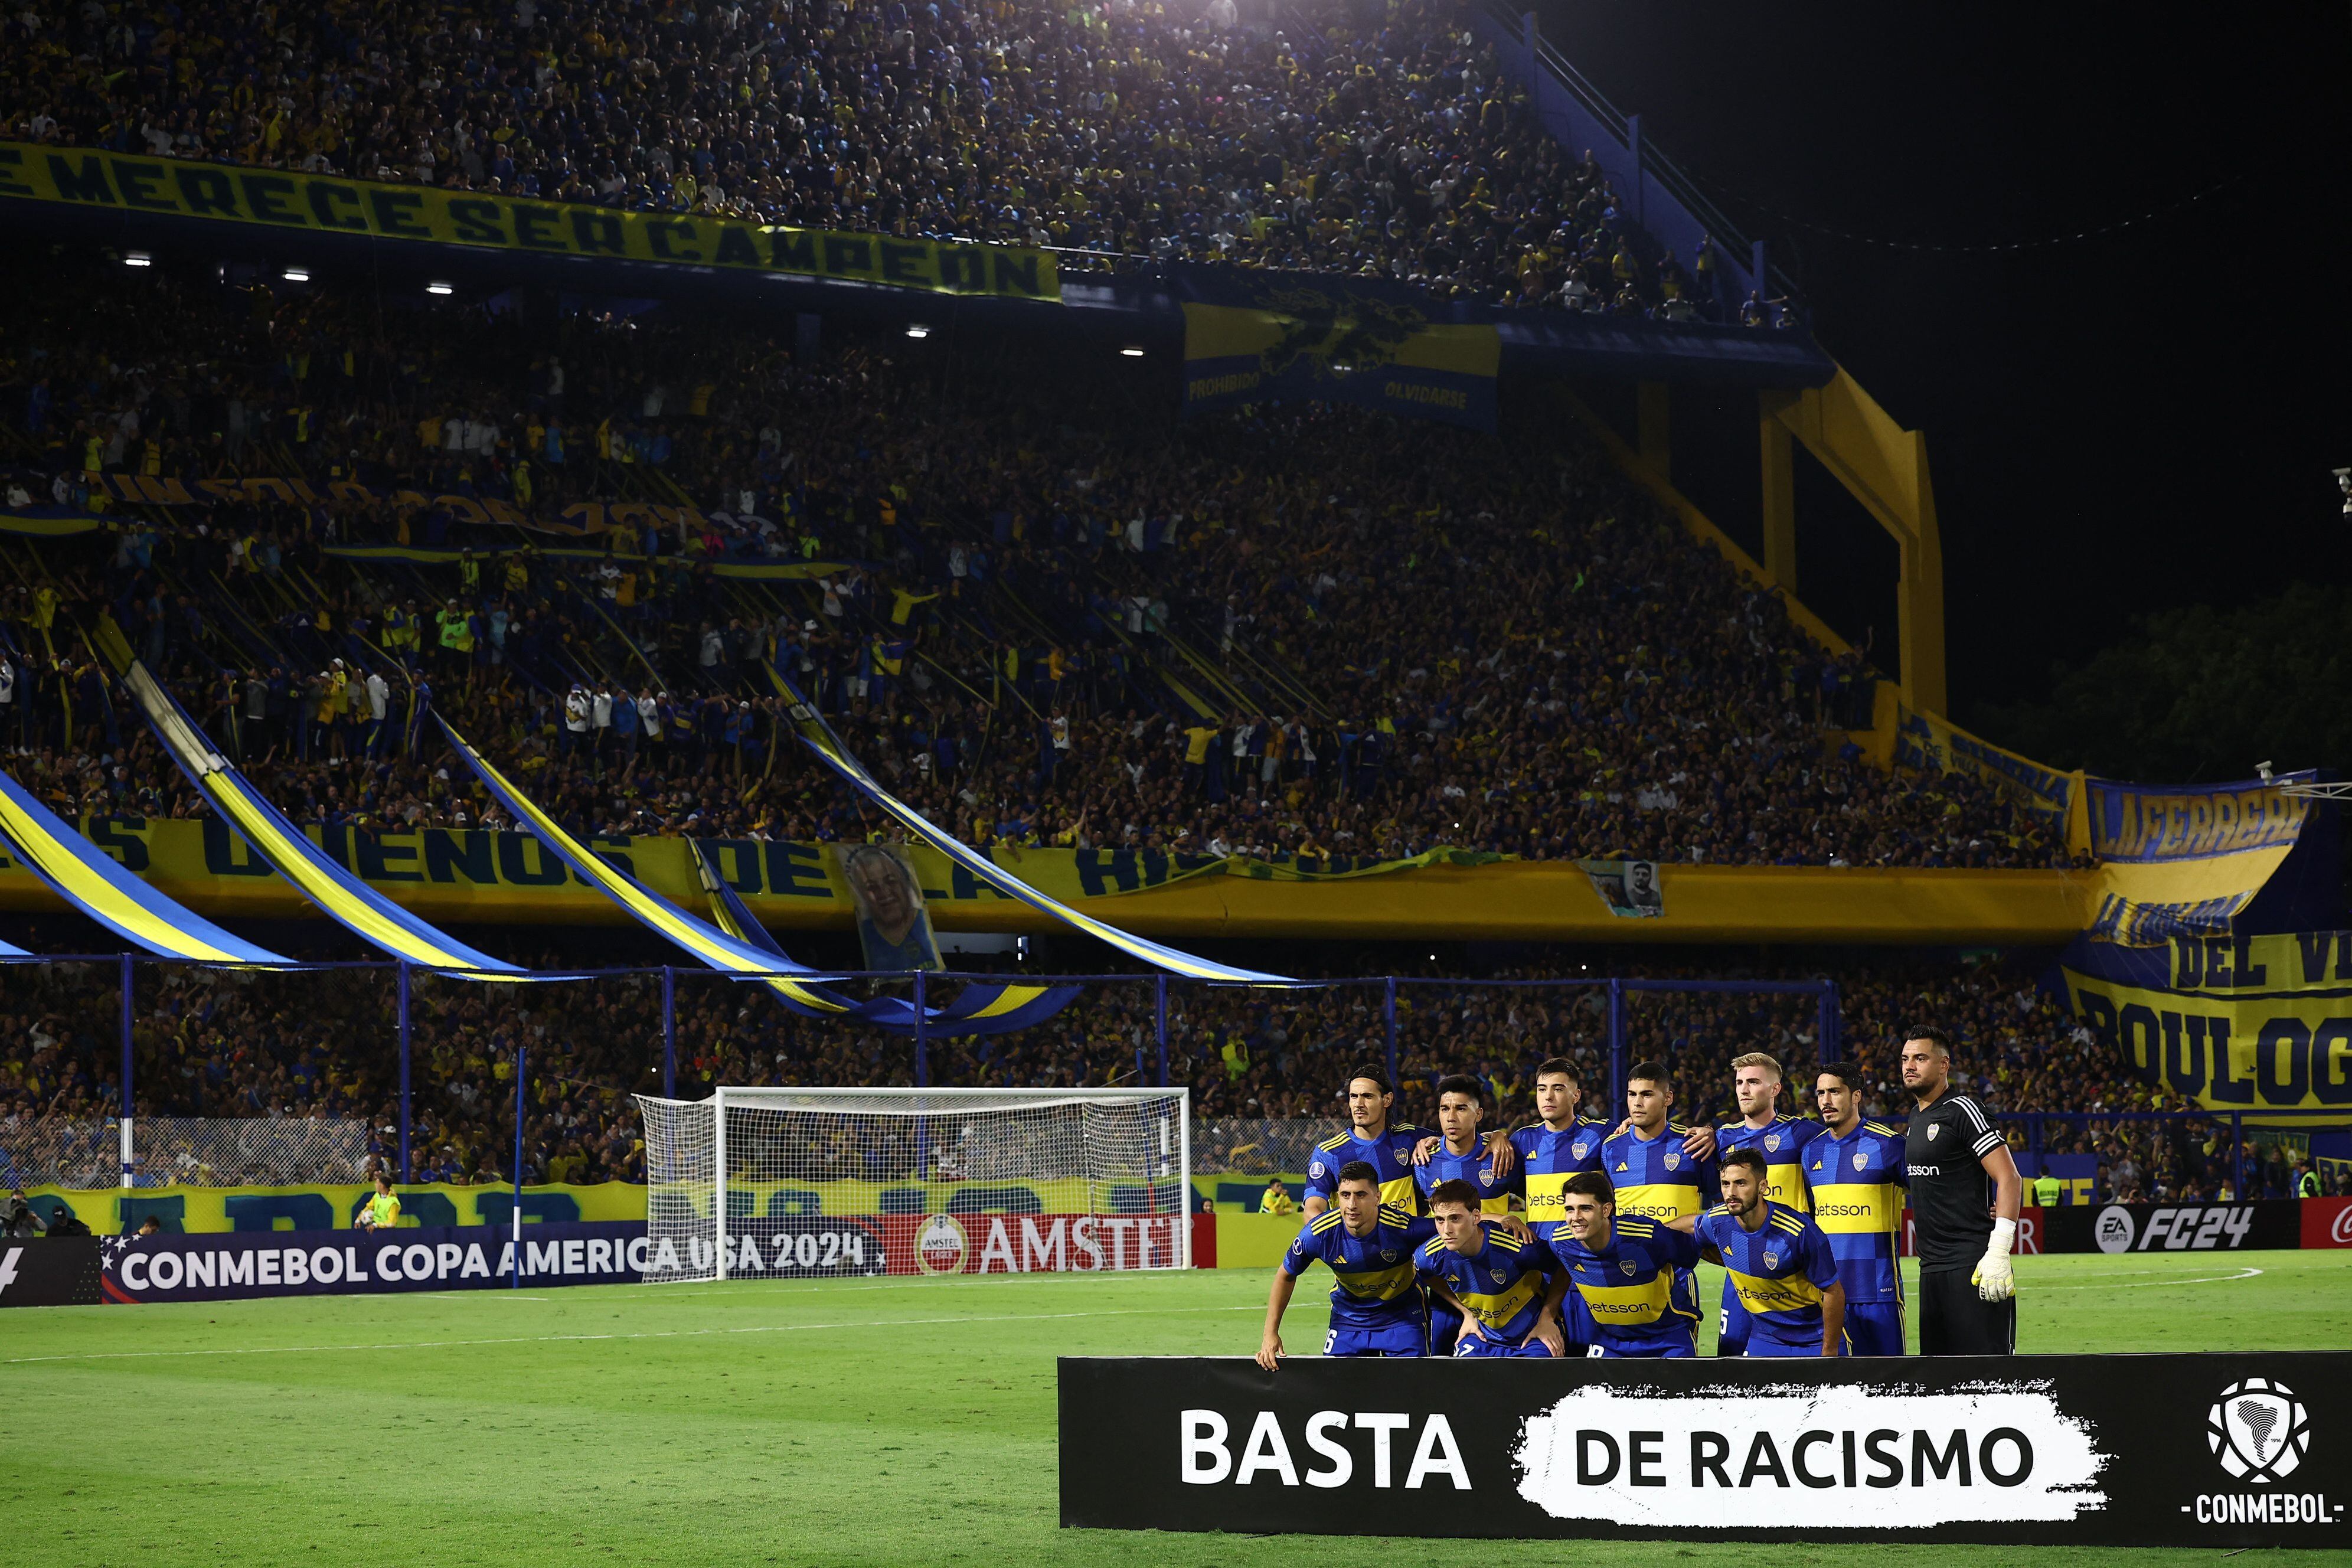 El equipo de Boca posó con una pancarta con la leyenda "Basta de racismo" (REUTERS/Agustin Marcarian)